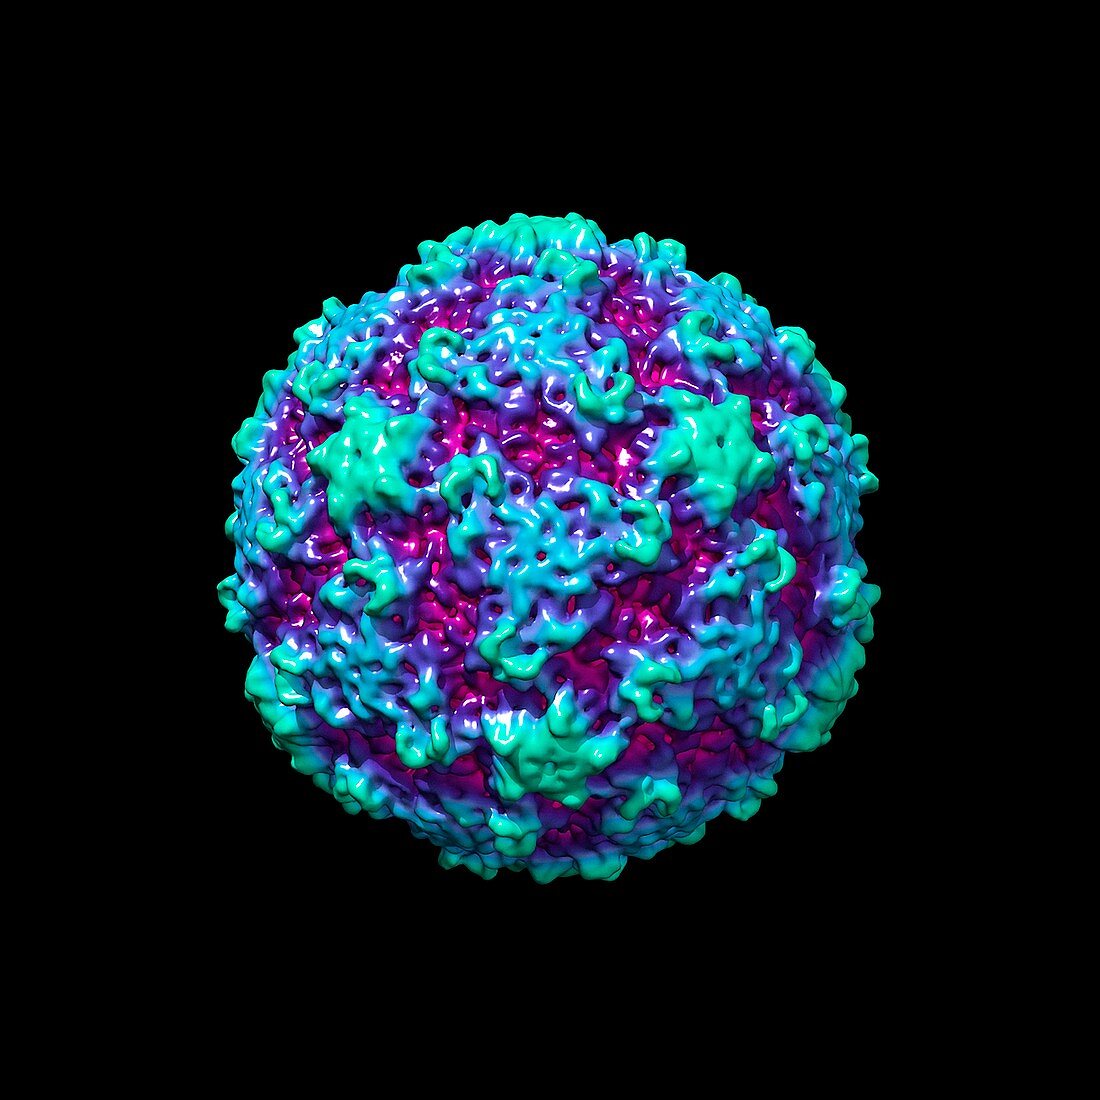 Human rhinovirus,molecular model